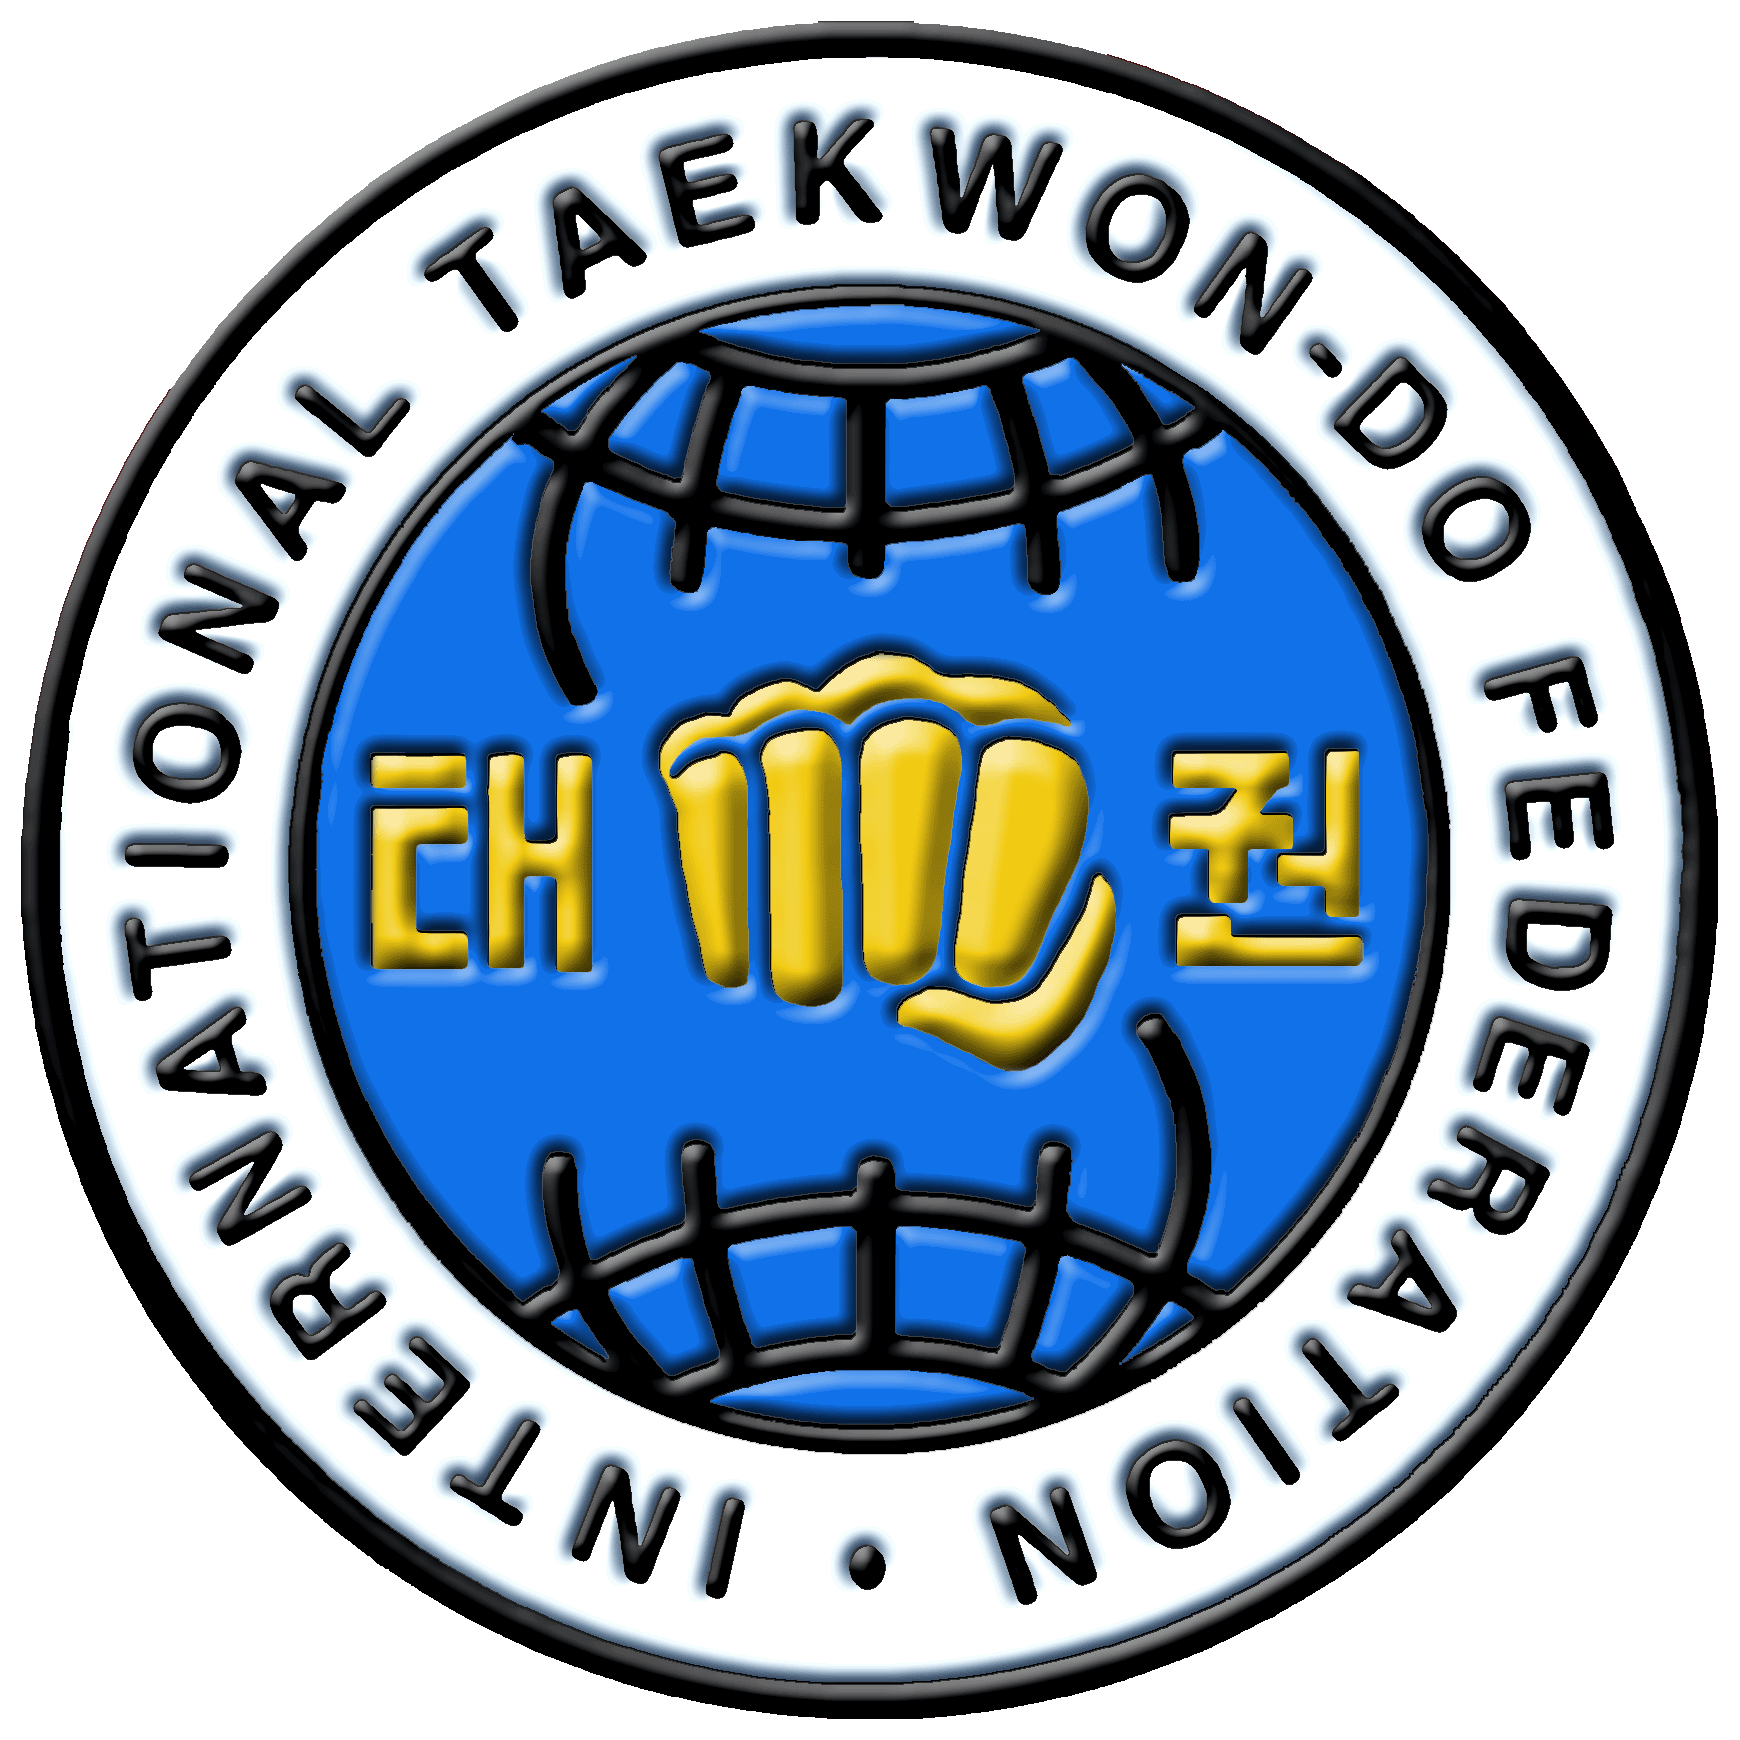 Эмблема тхэквондо ИТФ. Самарская Федерация тхэквондо ИТФ лого. Логотип Федерации тхэквондо ИТФ. Эмблема таэквондо ITF. Федерация мфт таэквондо